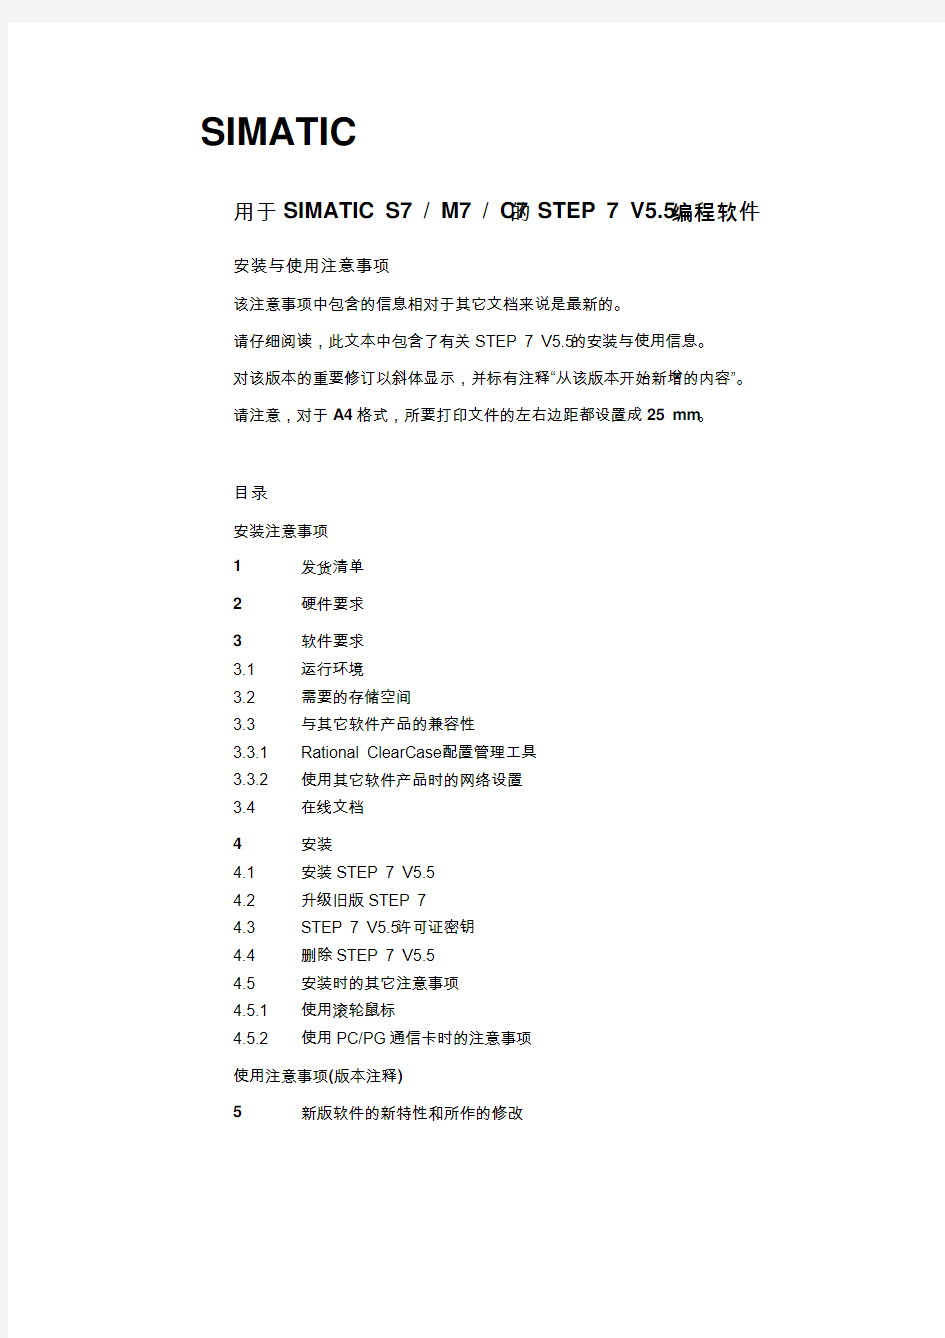 STEP7 V5.5中文版简介